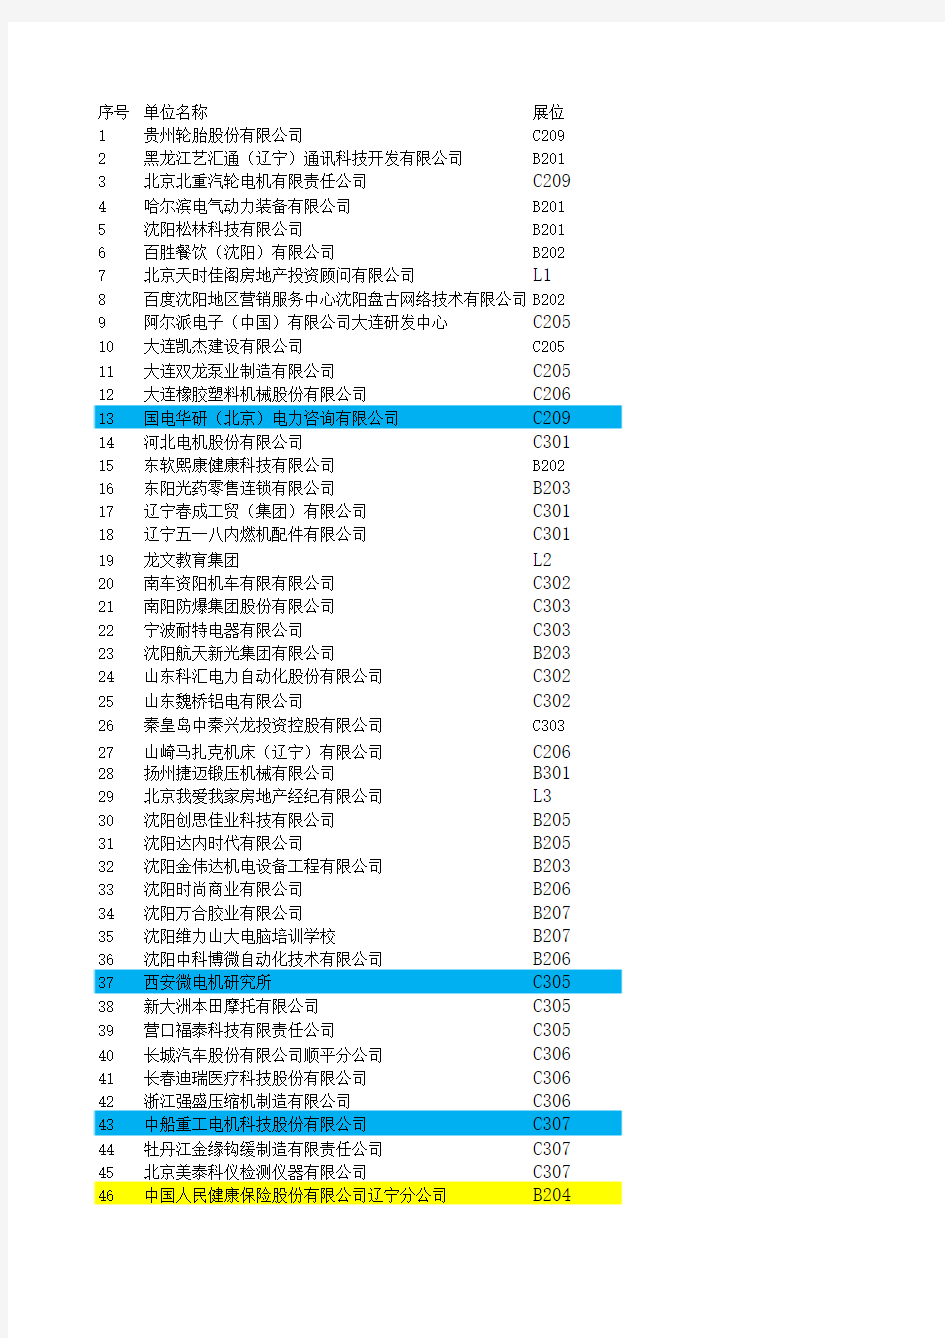 2014年沈阳工业大学秋季双选会名单